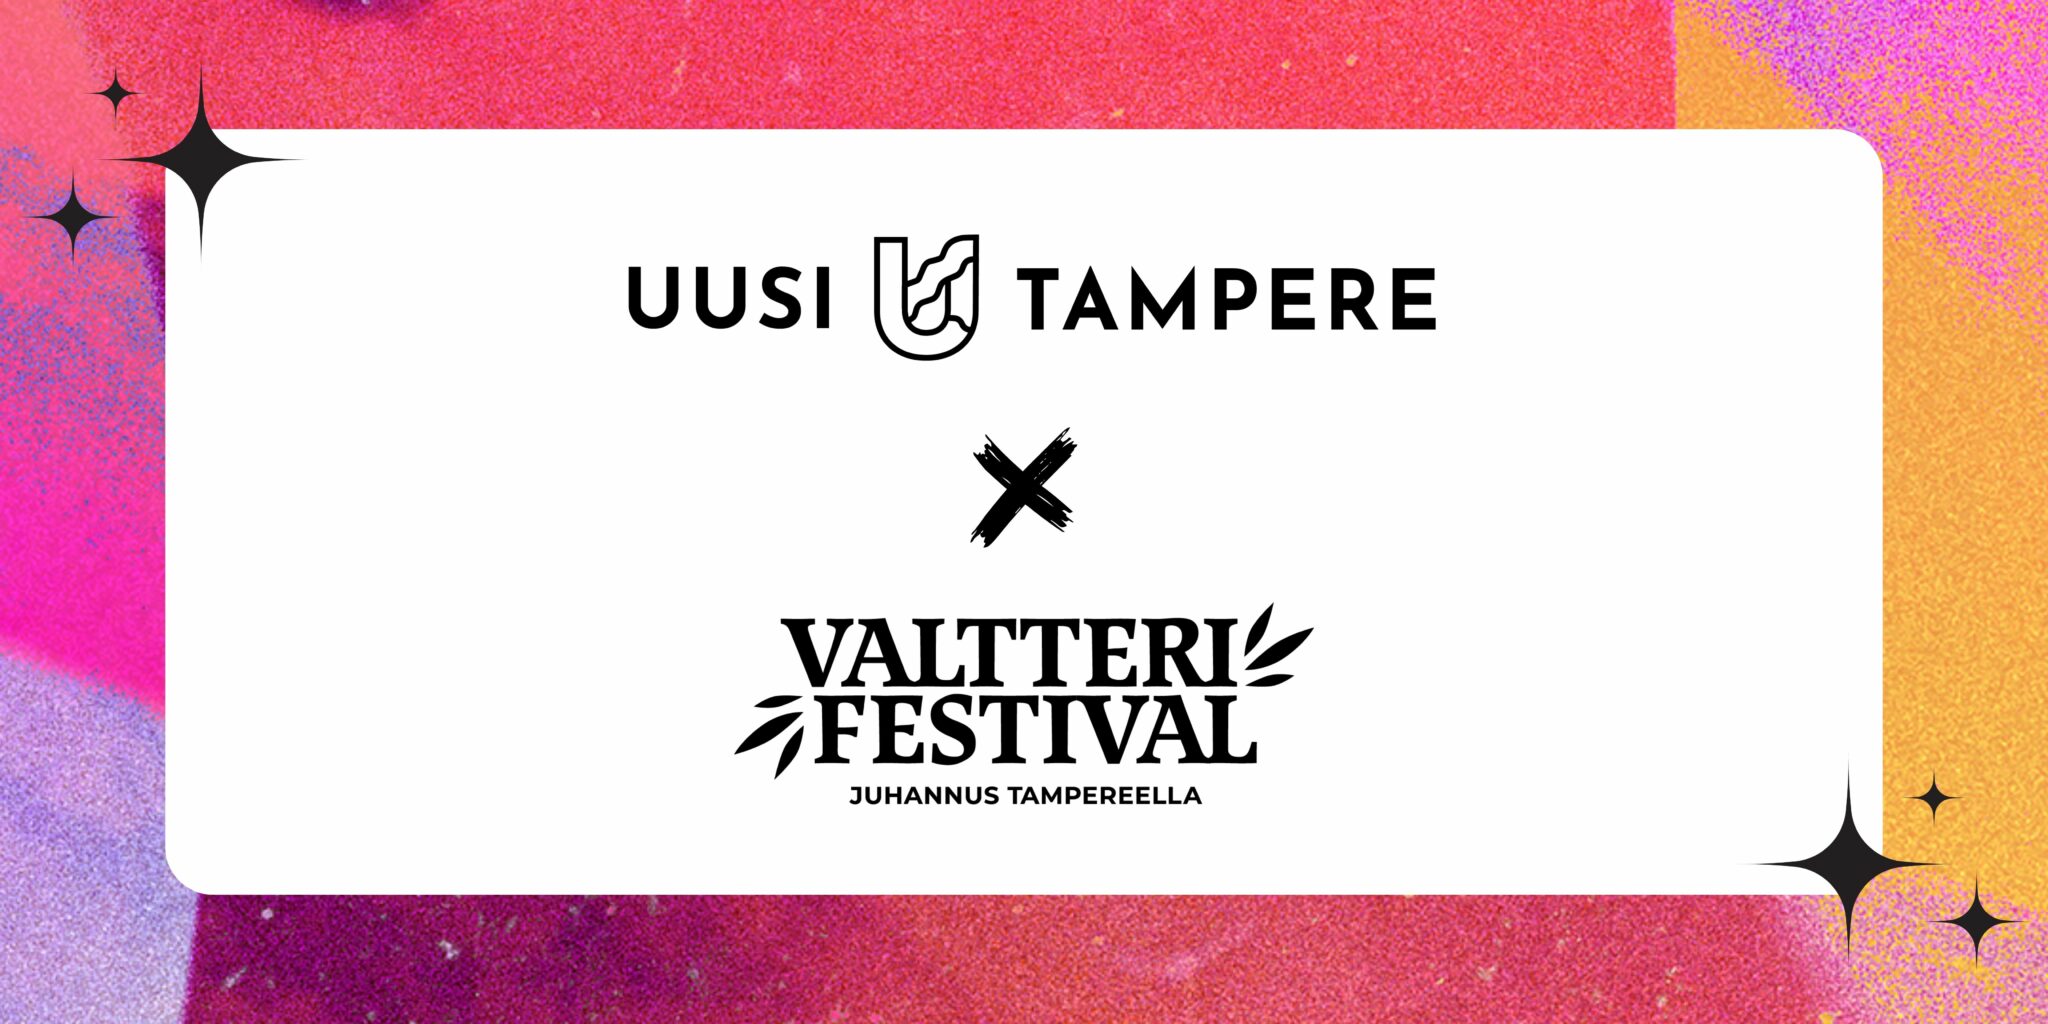 Kesän ihanin lahjaidea – valloittavat kaupunkifestivaalit Uusi Tampere ja Valtteri nyt yhdessä paketissa!